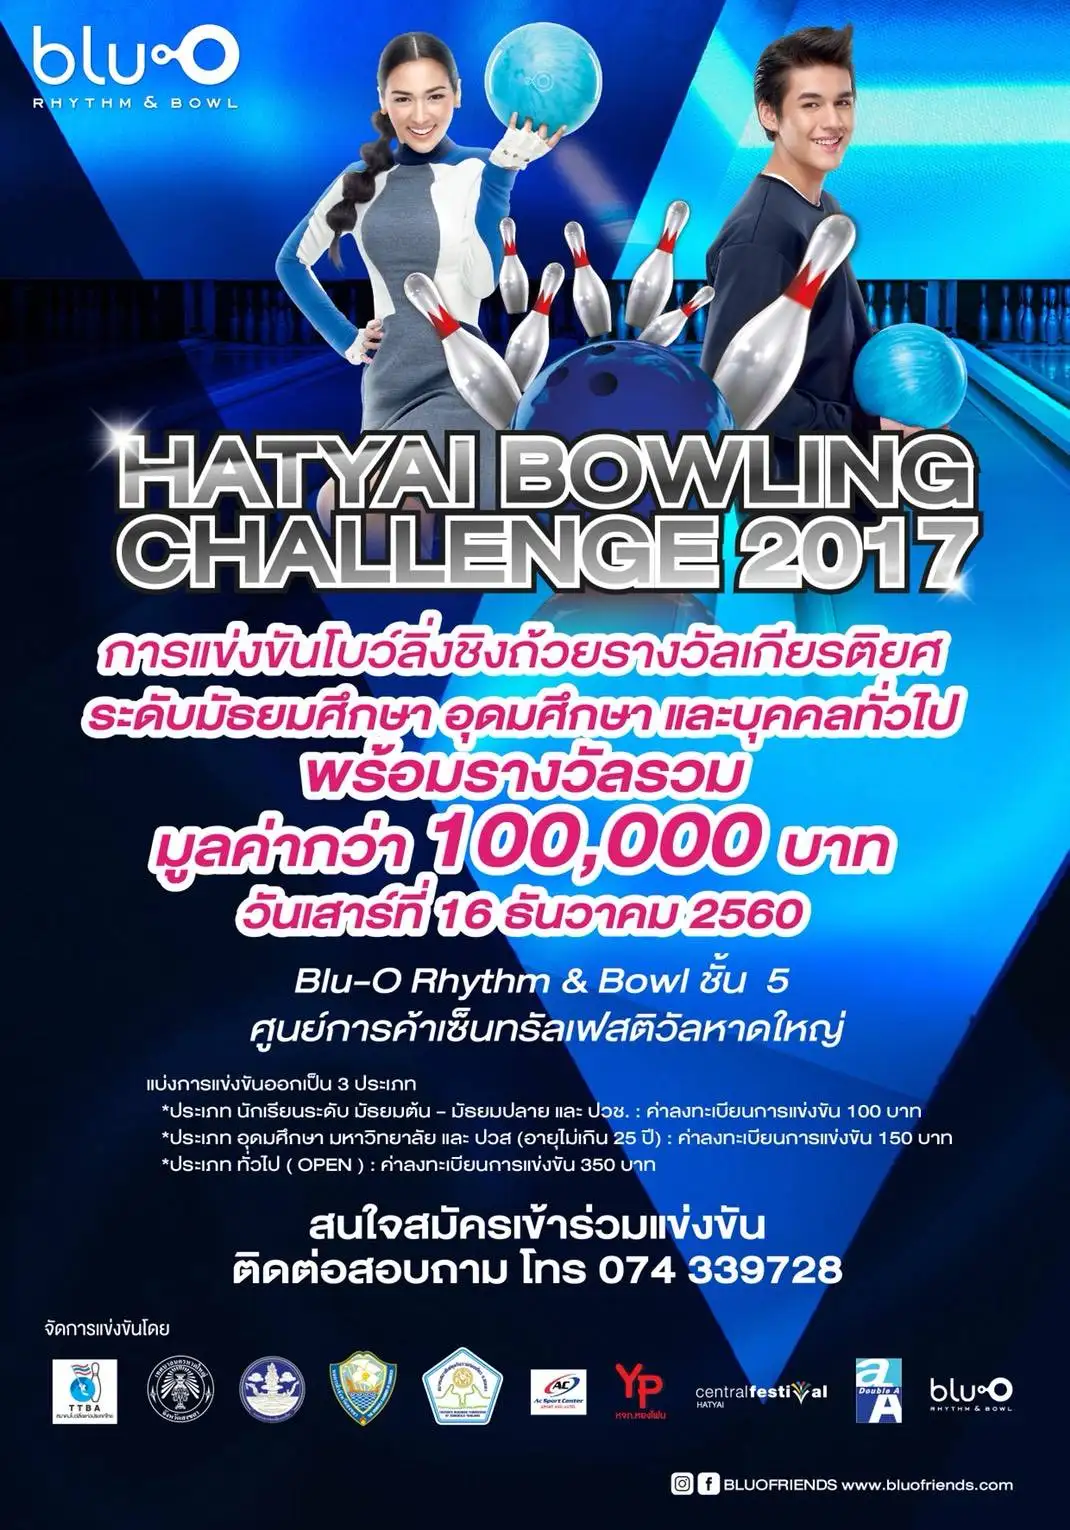 ชวนแข่งและร่วมชม Hatyai bowling challenge 2017 ชิงเงินรางวัลรวมกว่าหนึ่งแสนบาท